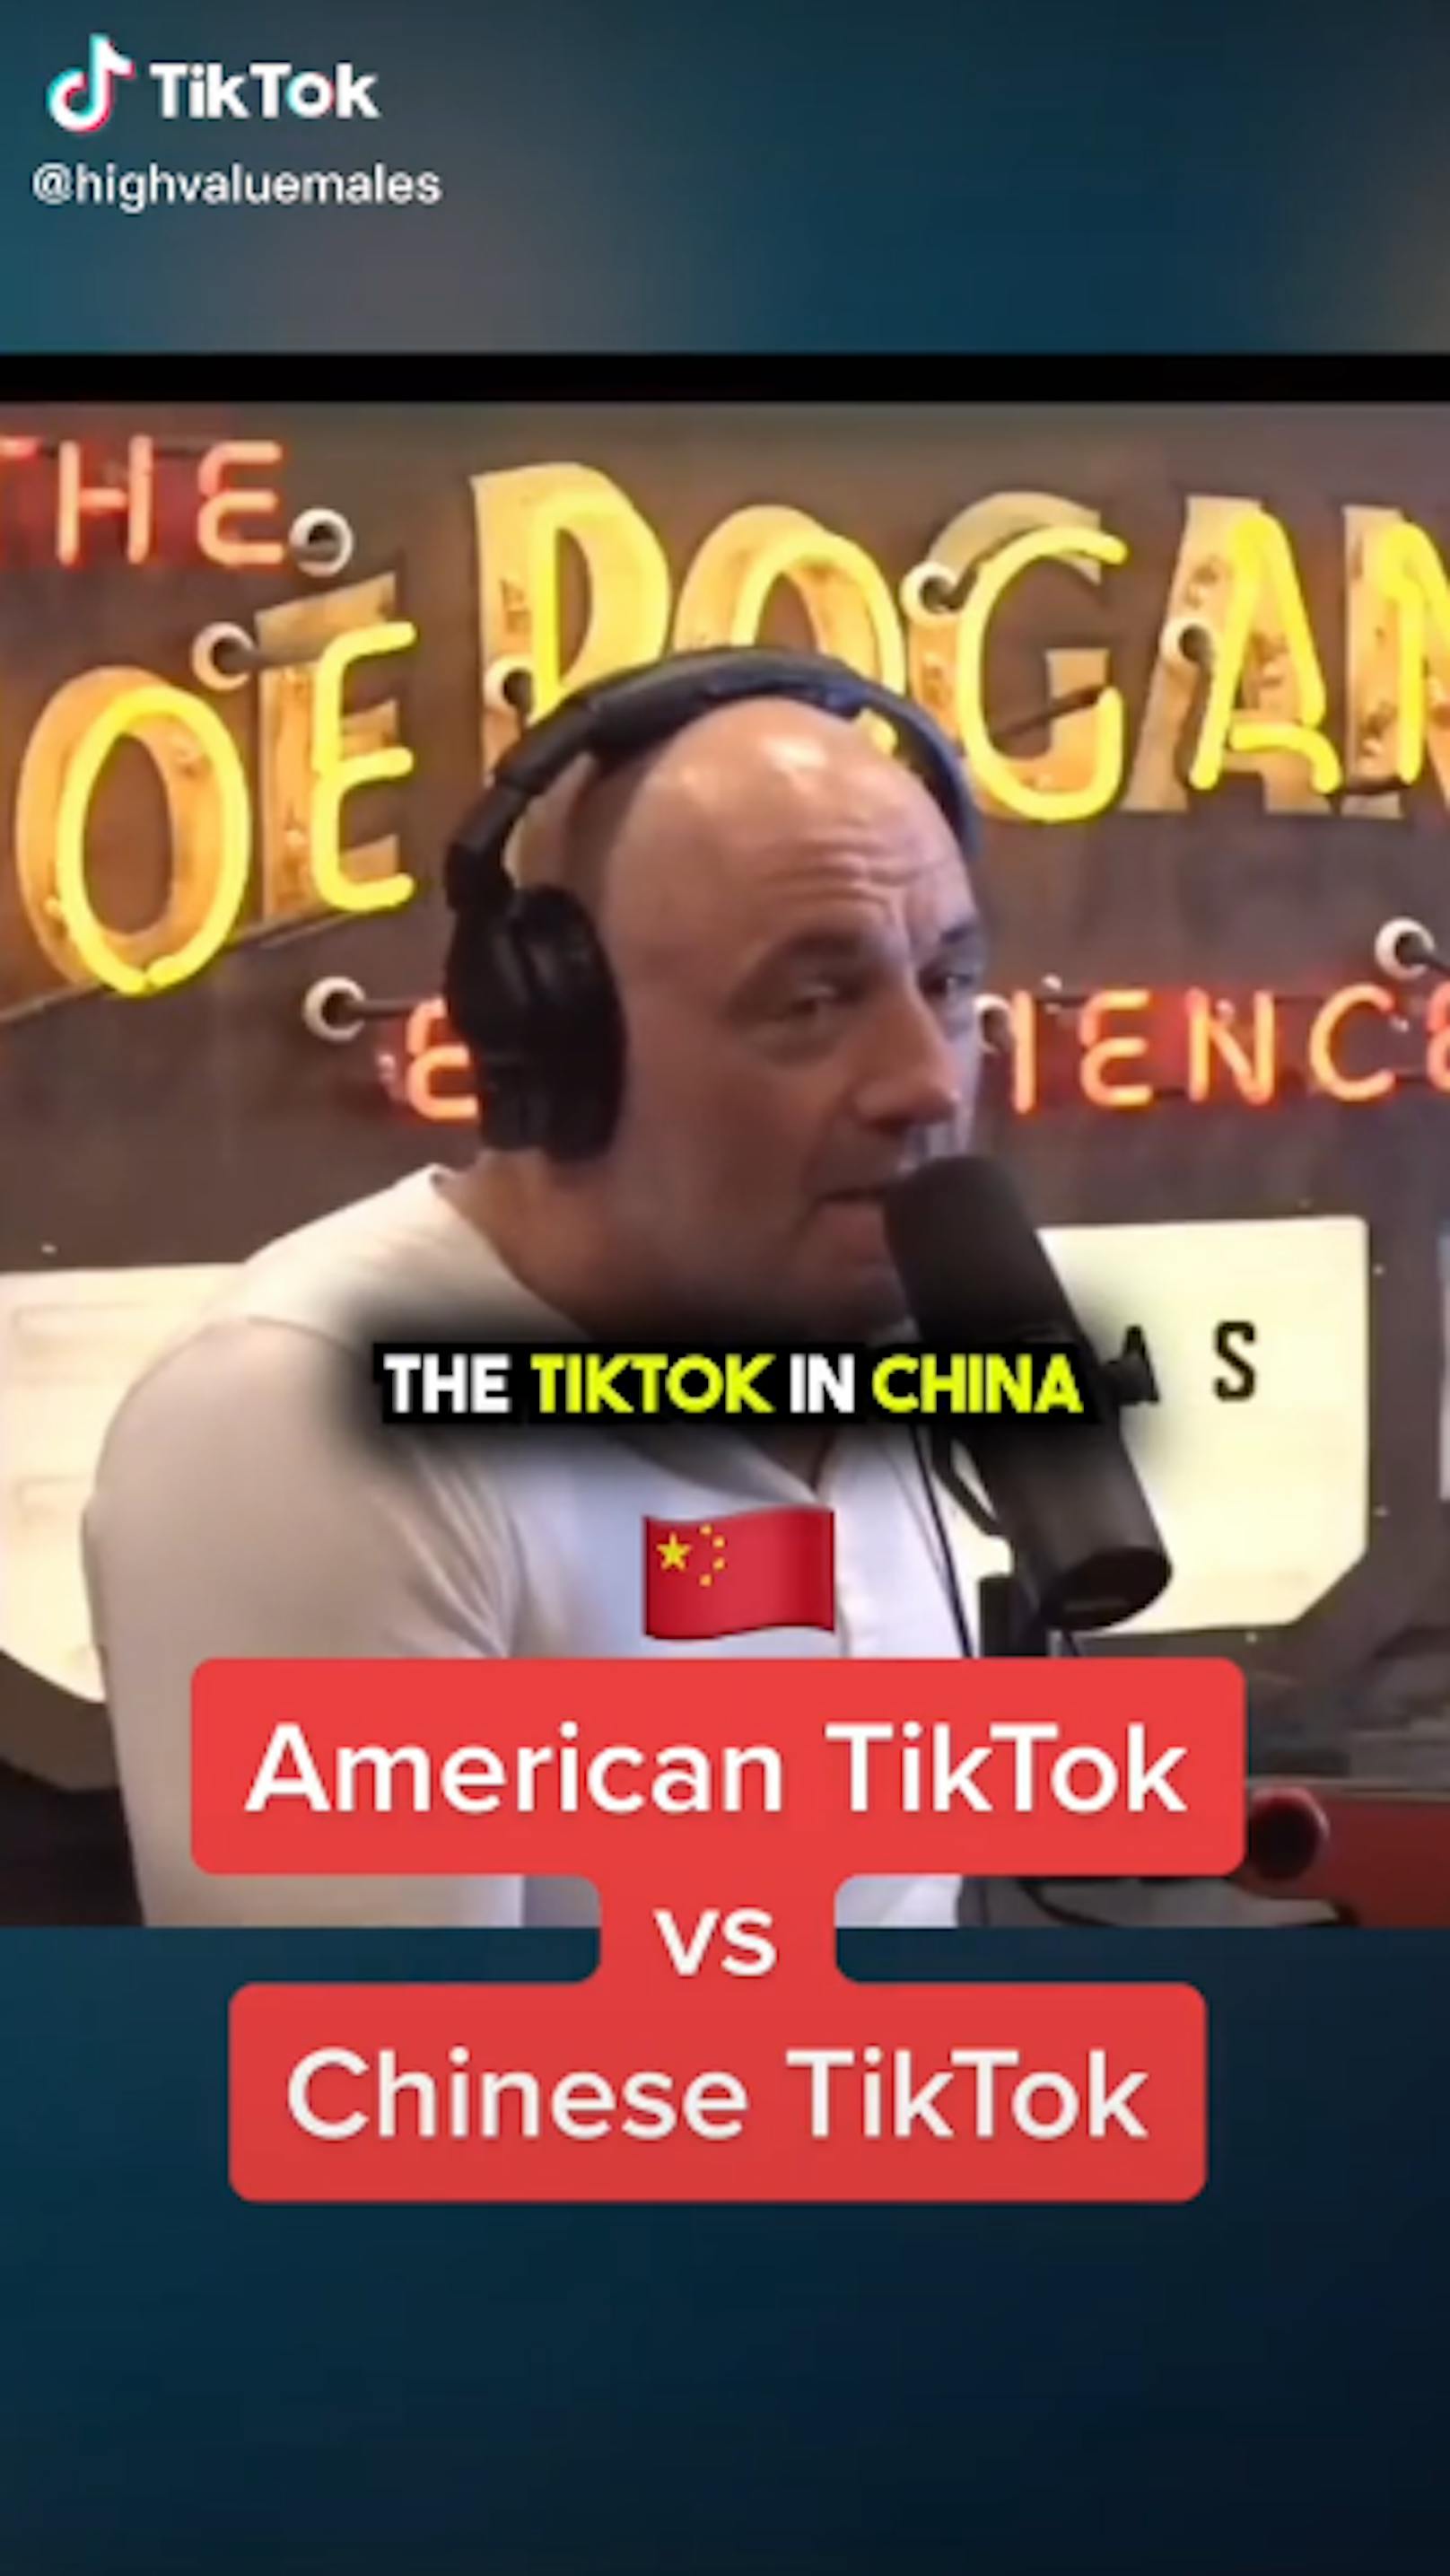 Der erfolgreiche, wenn auch umstrittene US-Podcaster Joe Rogan ist kein Freund von TikTok. Dafür lobt er das chinesische Pendant Douyin.